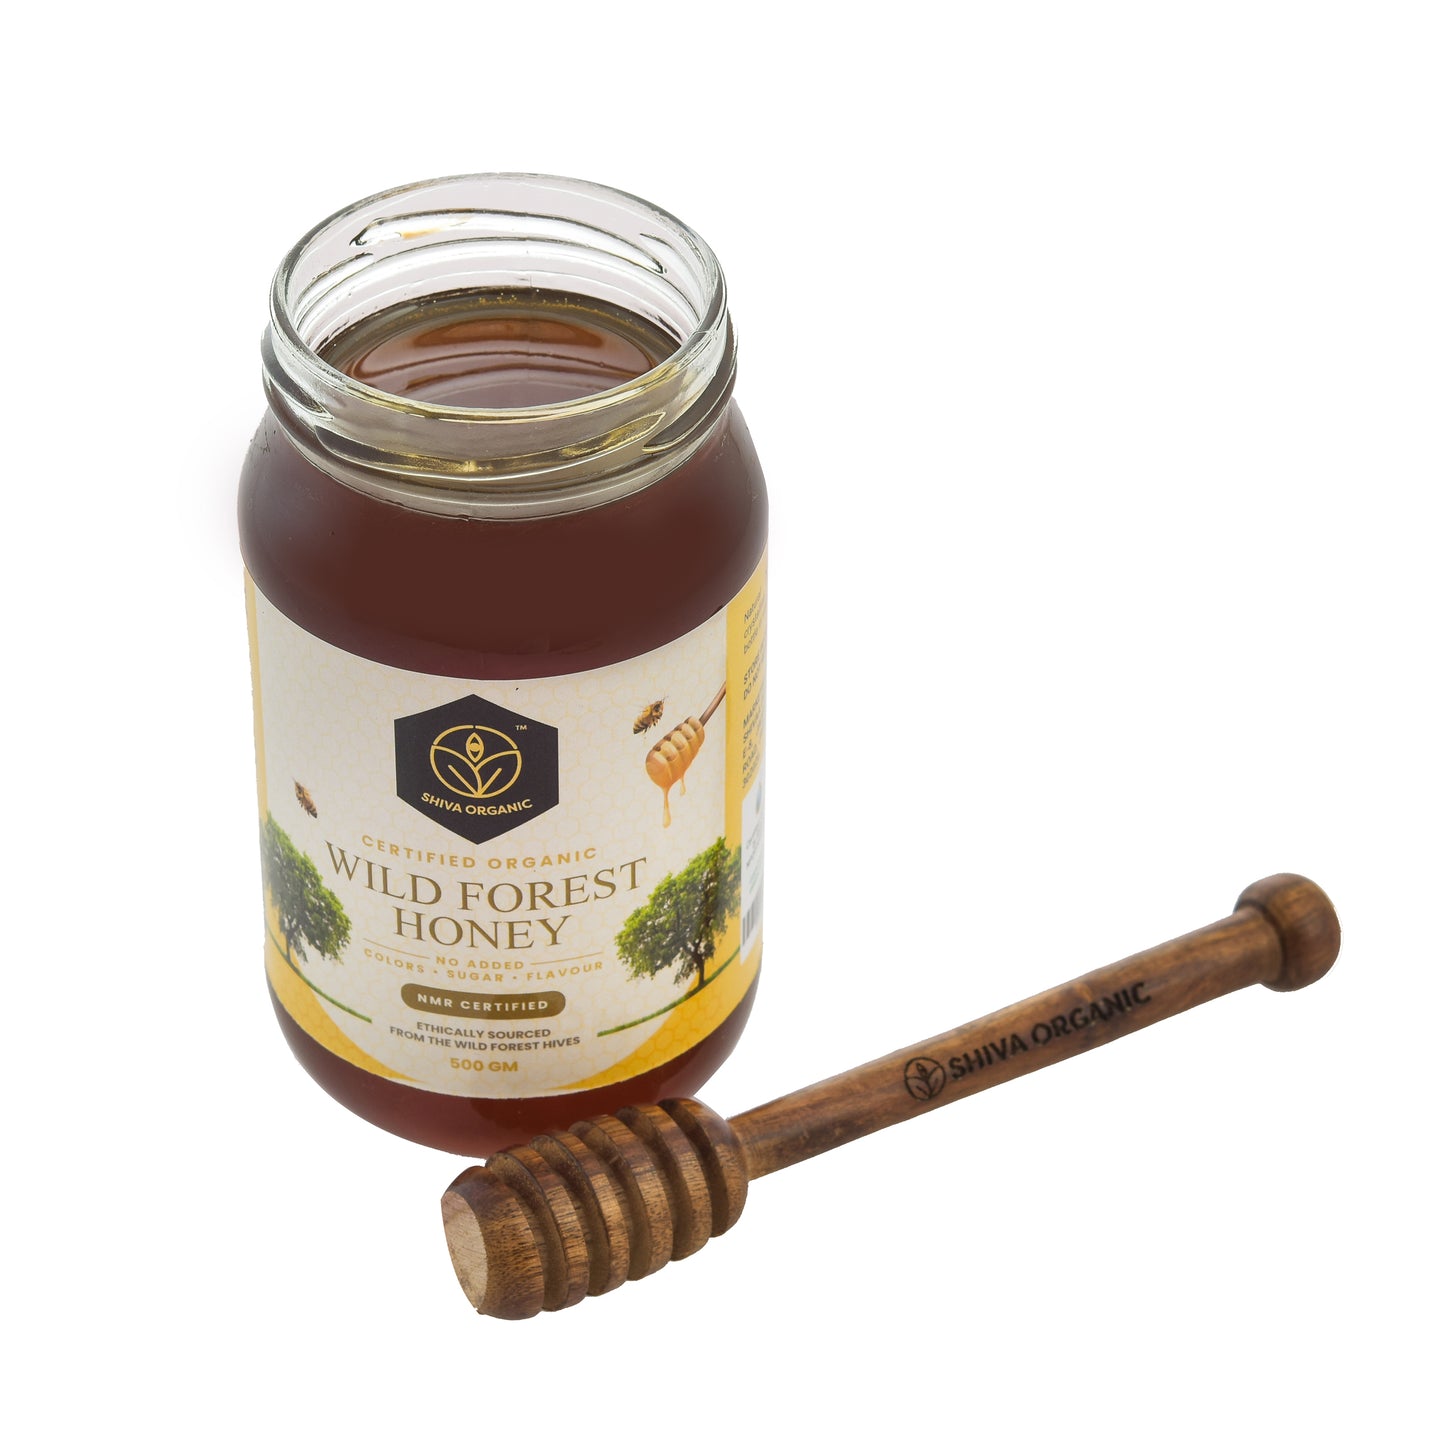 2x500 gm | Wild Forest Honey | Black forest honey | Shiva Organic